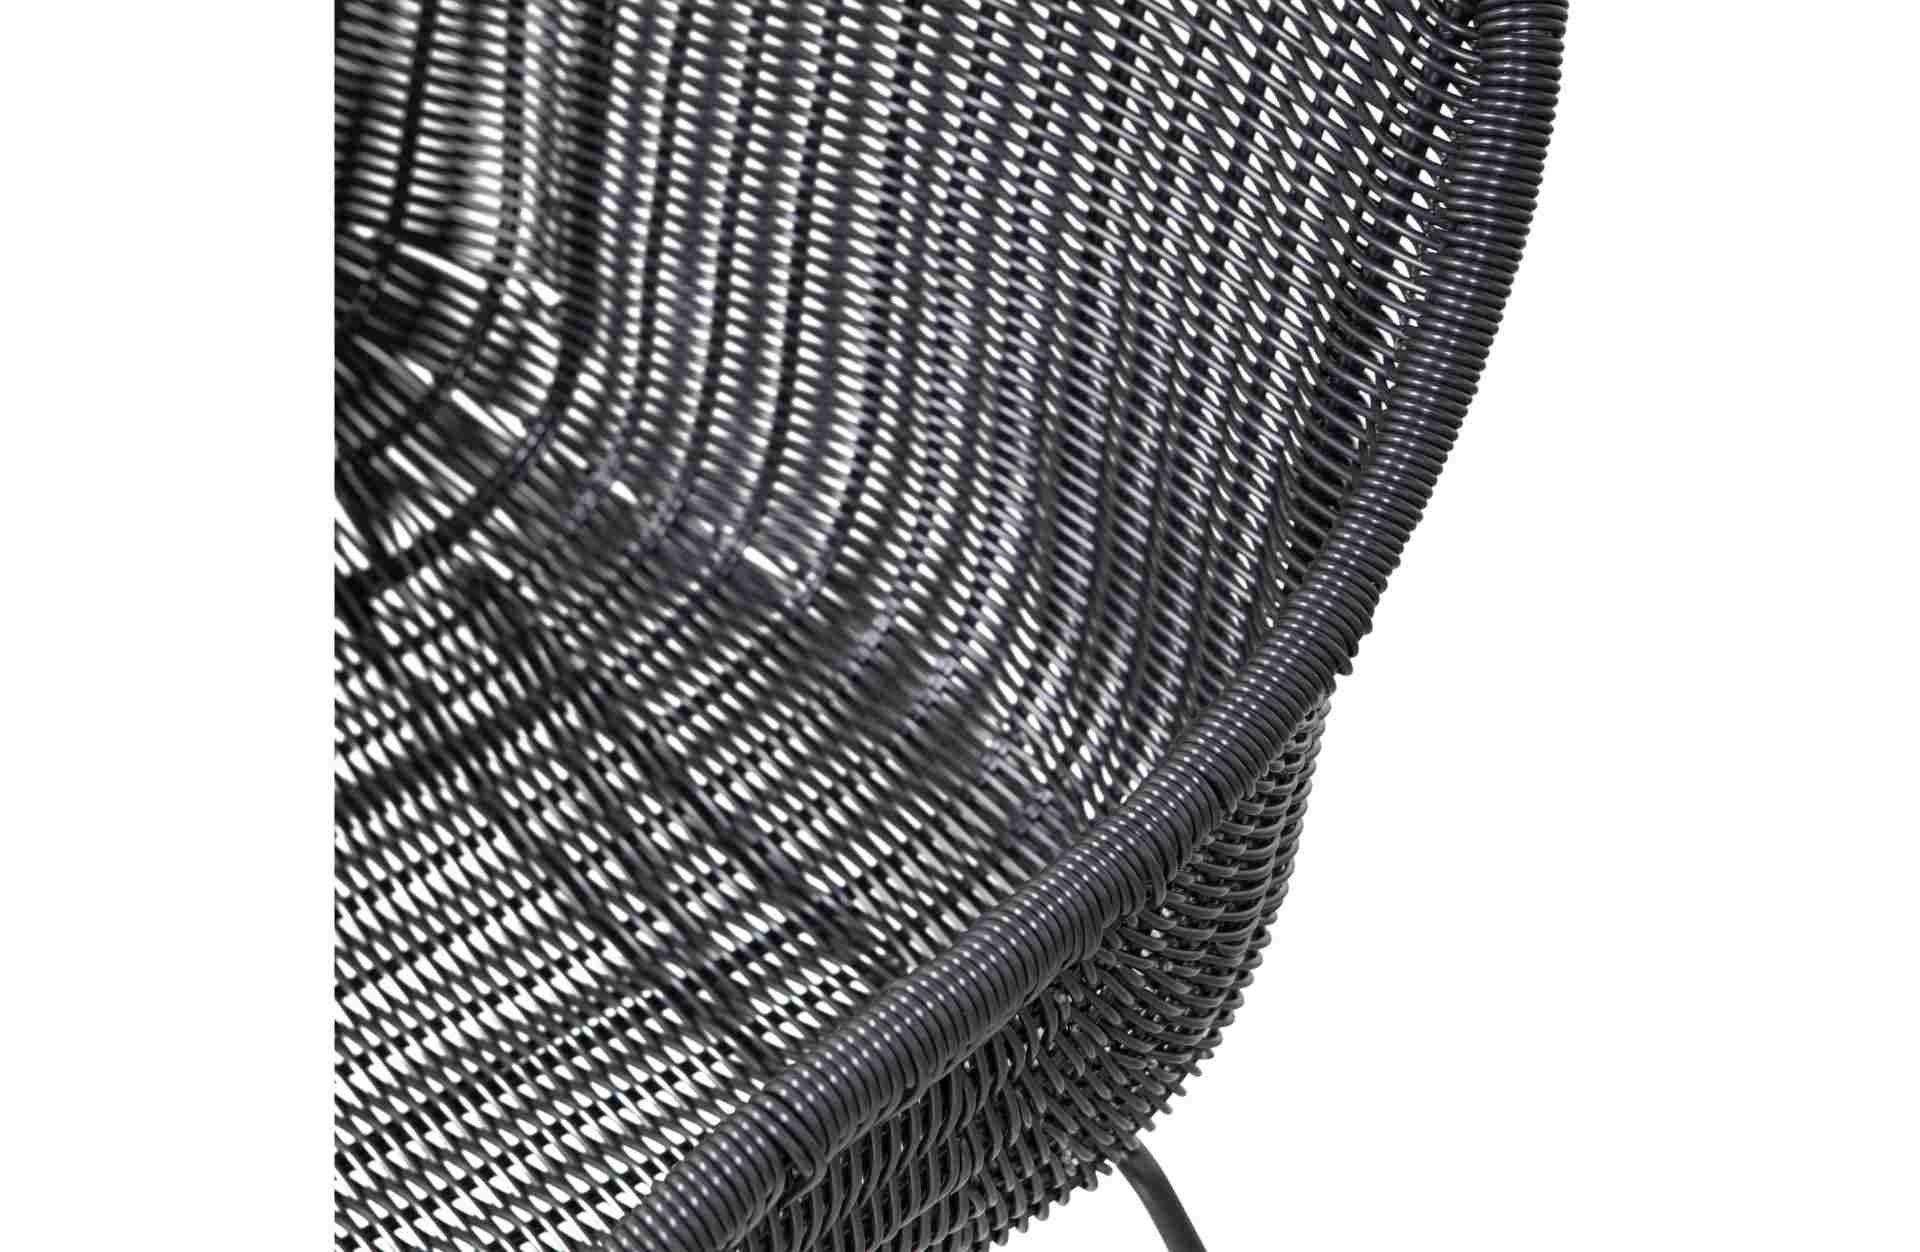 Der Esszimmerstuhl Willow überzeugt mit seinem klassischen Design. Gefertigt wurde er aus künstlichem Rattan, welches einen schwarzen Farbton besitzen. Das Gestell ist aus Metall und hat eine schwarze Farbe. Die Sitzhöhe beträgt 47 cm.